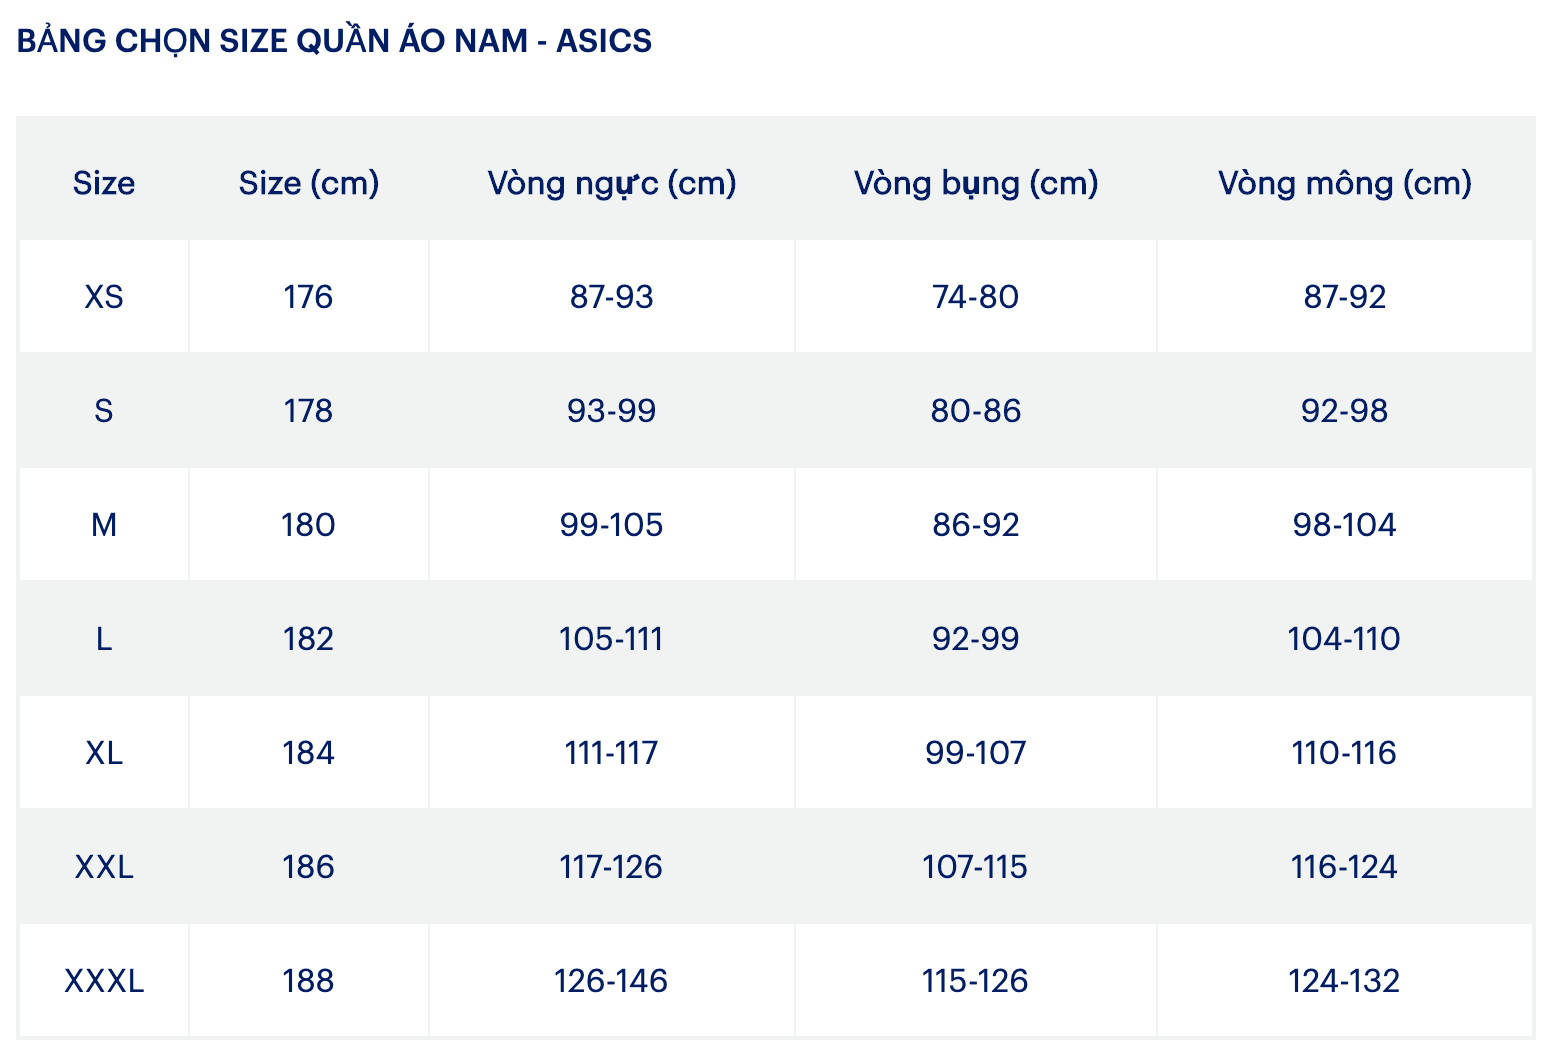 Bảng chọn size quần áo nam - Asics @ ULA Vietnam - Premium Online Shopping Mall